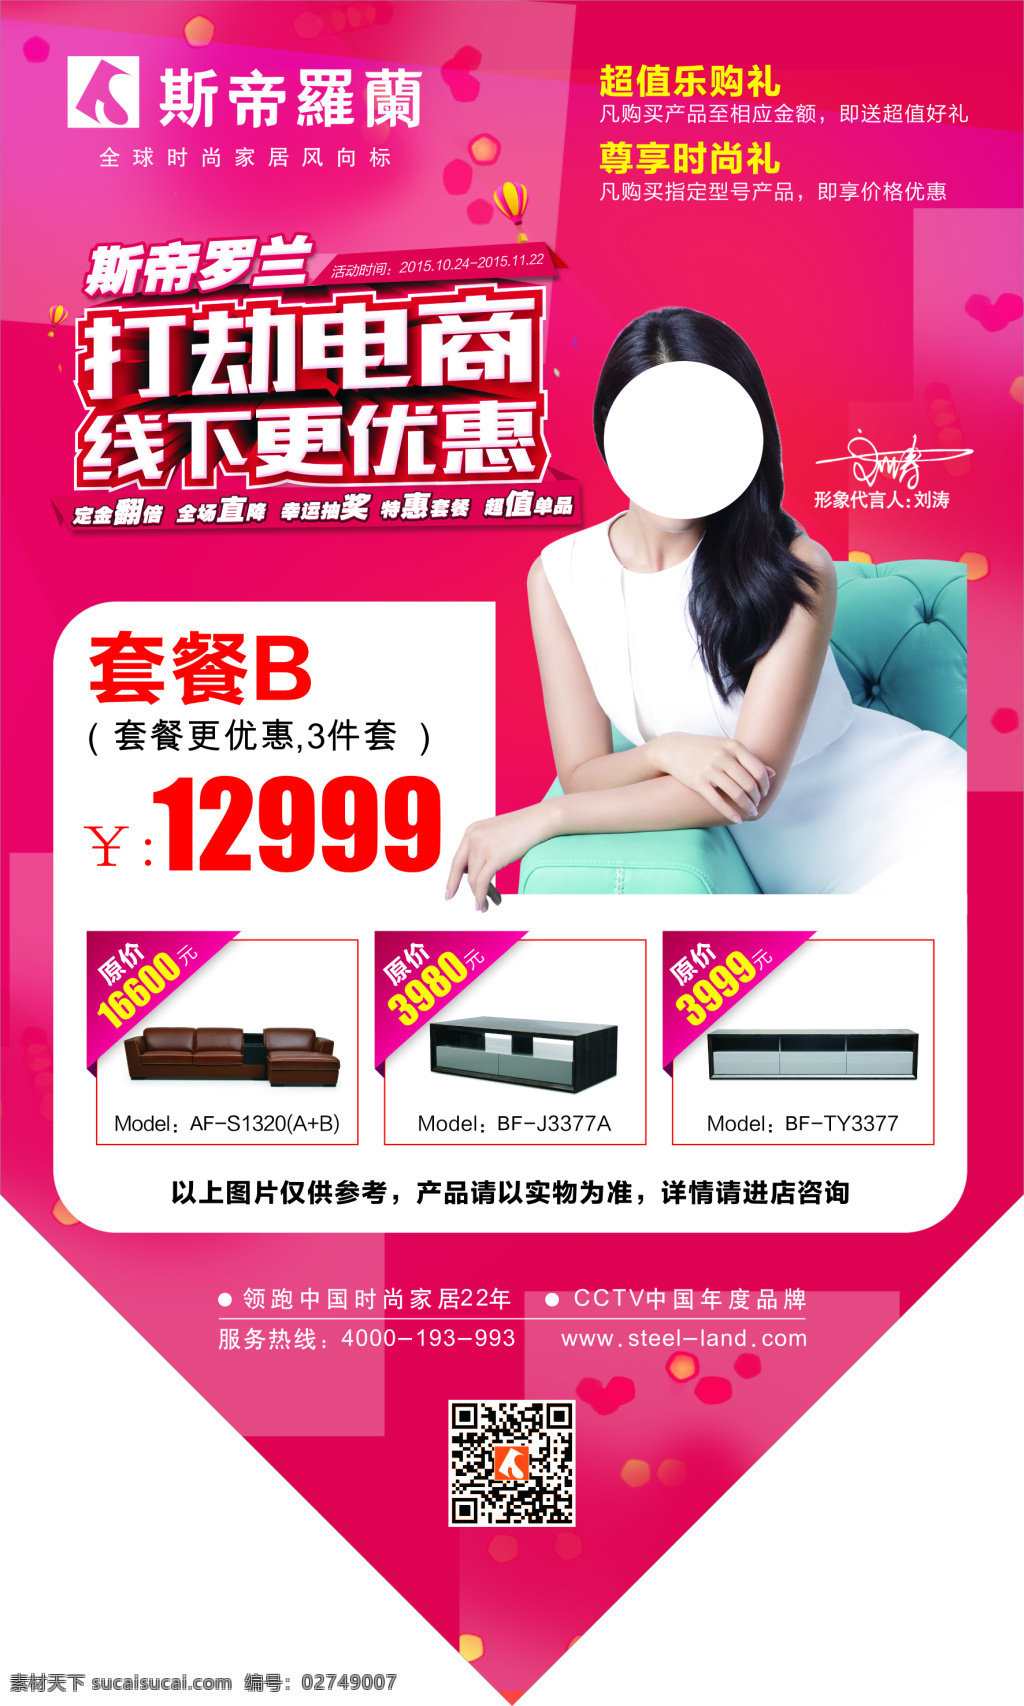 斯 帝 罗兰 大 价 牌 打劫电商 线下更优惠 logo 刘涛签名 斯帝罗兰茶几 皮沙发 二维码 白色